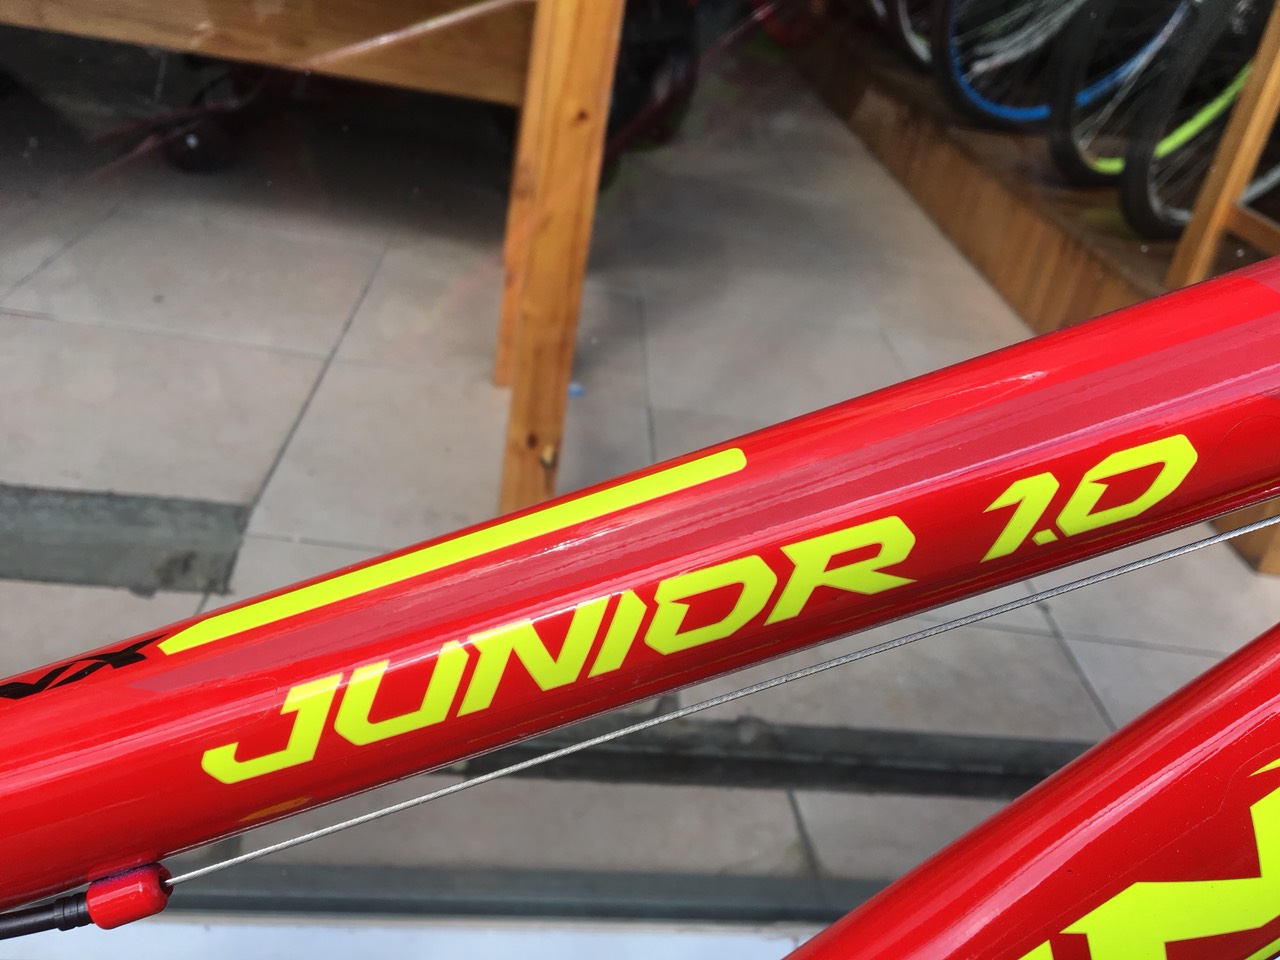 Xe đạp trẻ em TRINX JUNIOR1.0 2019 Red Yellow